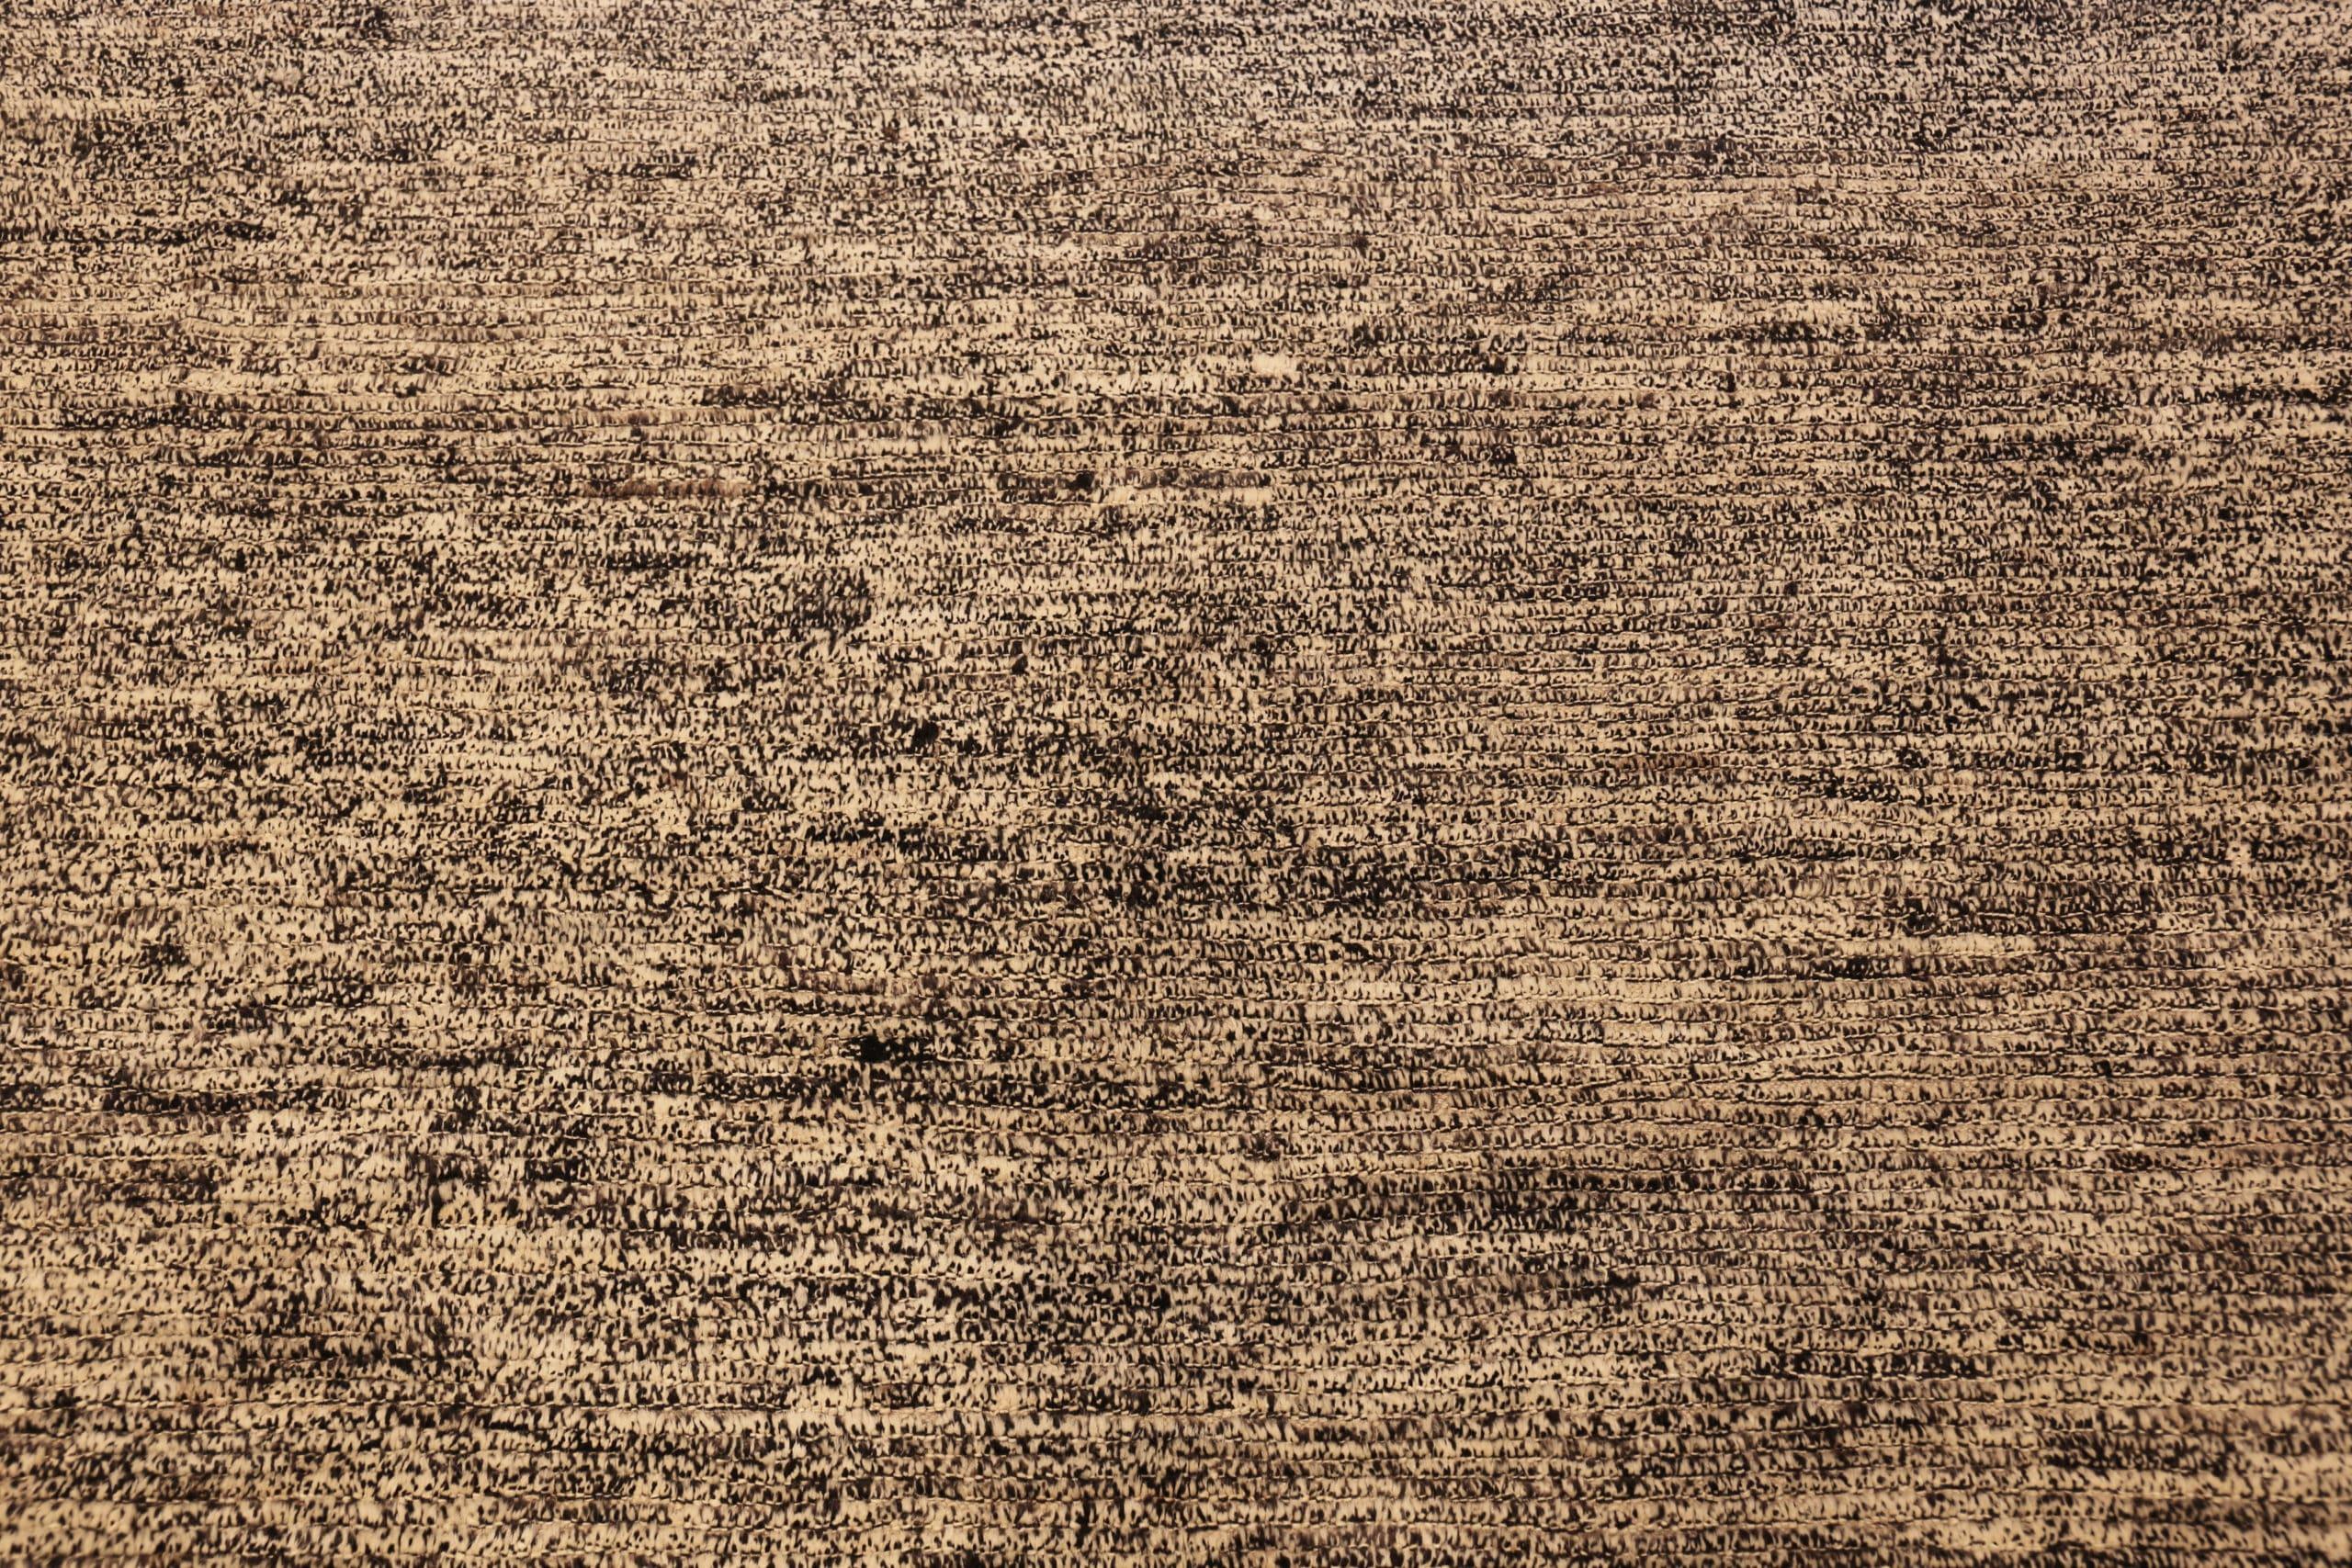 Textured Beige Modern Distressed Rug, Herkunftsland: Afghanistan, Entstehungszeit: Modern. Größe: 2,9 m x 3,51 m (9 ft 6 in x 11 ft 6 in)
 